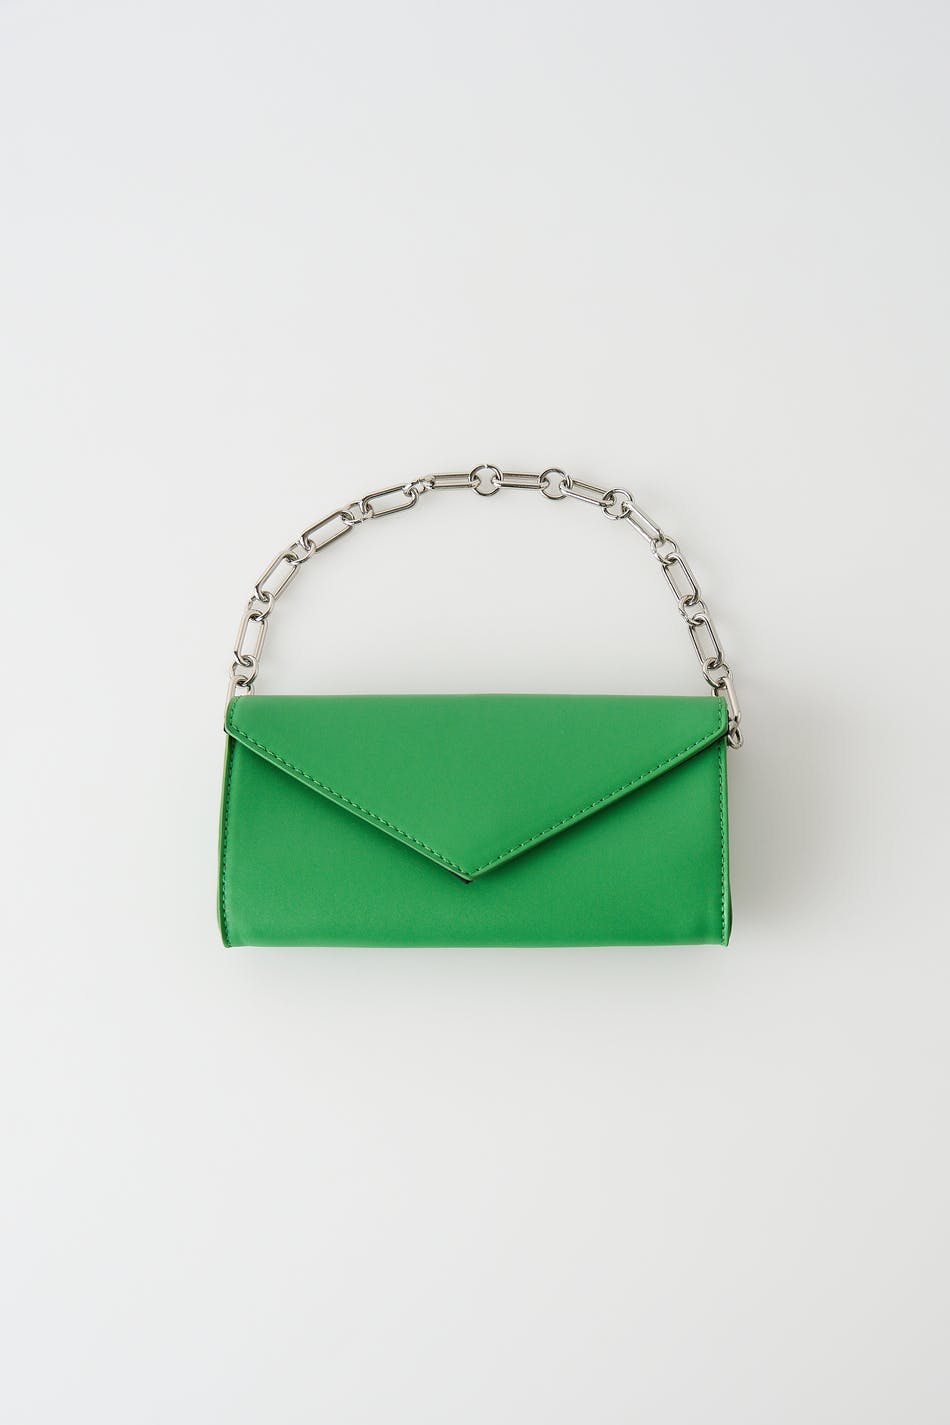 Gina Tricot - Ellinor Envelope Bag - Handtaschen - Grün - One Size - Damen